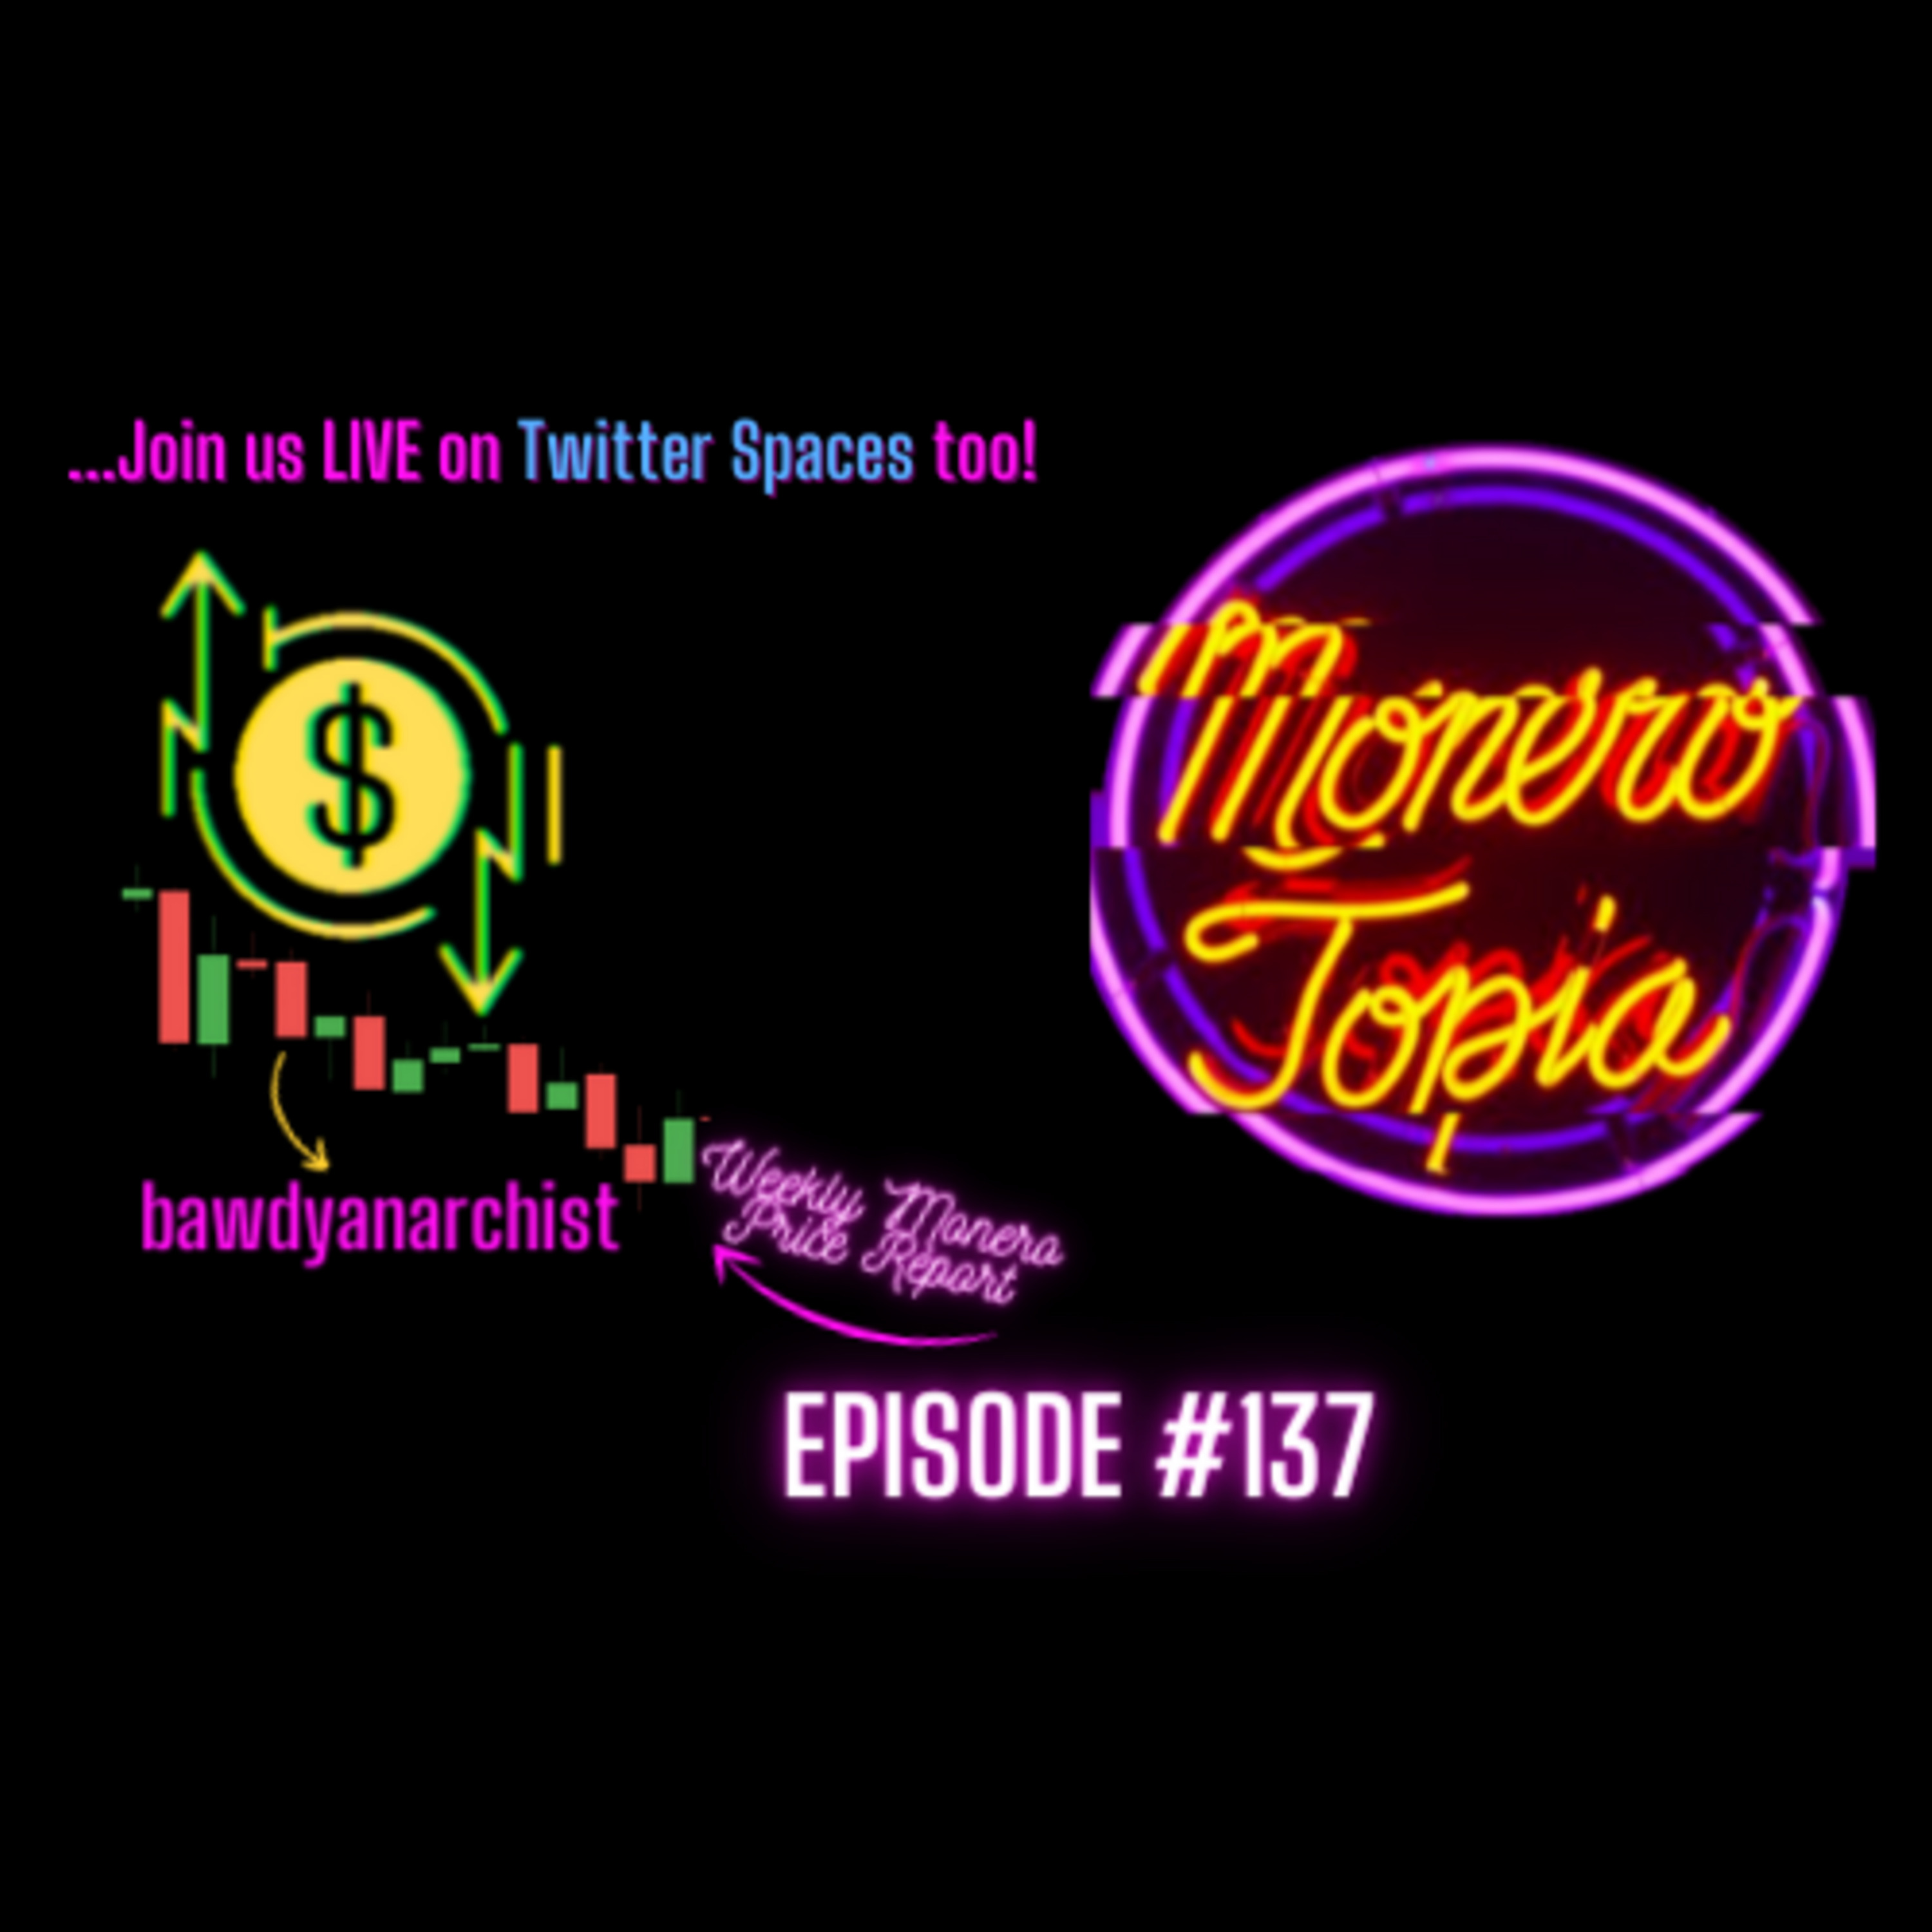 MoneroTopia Episode #137 - Price Report, Dev, News & MORE!